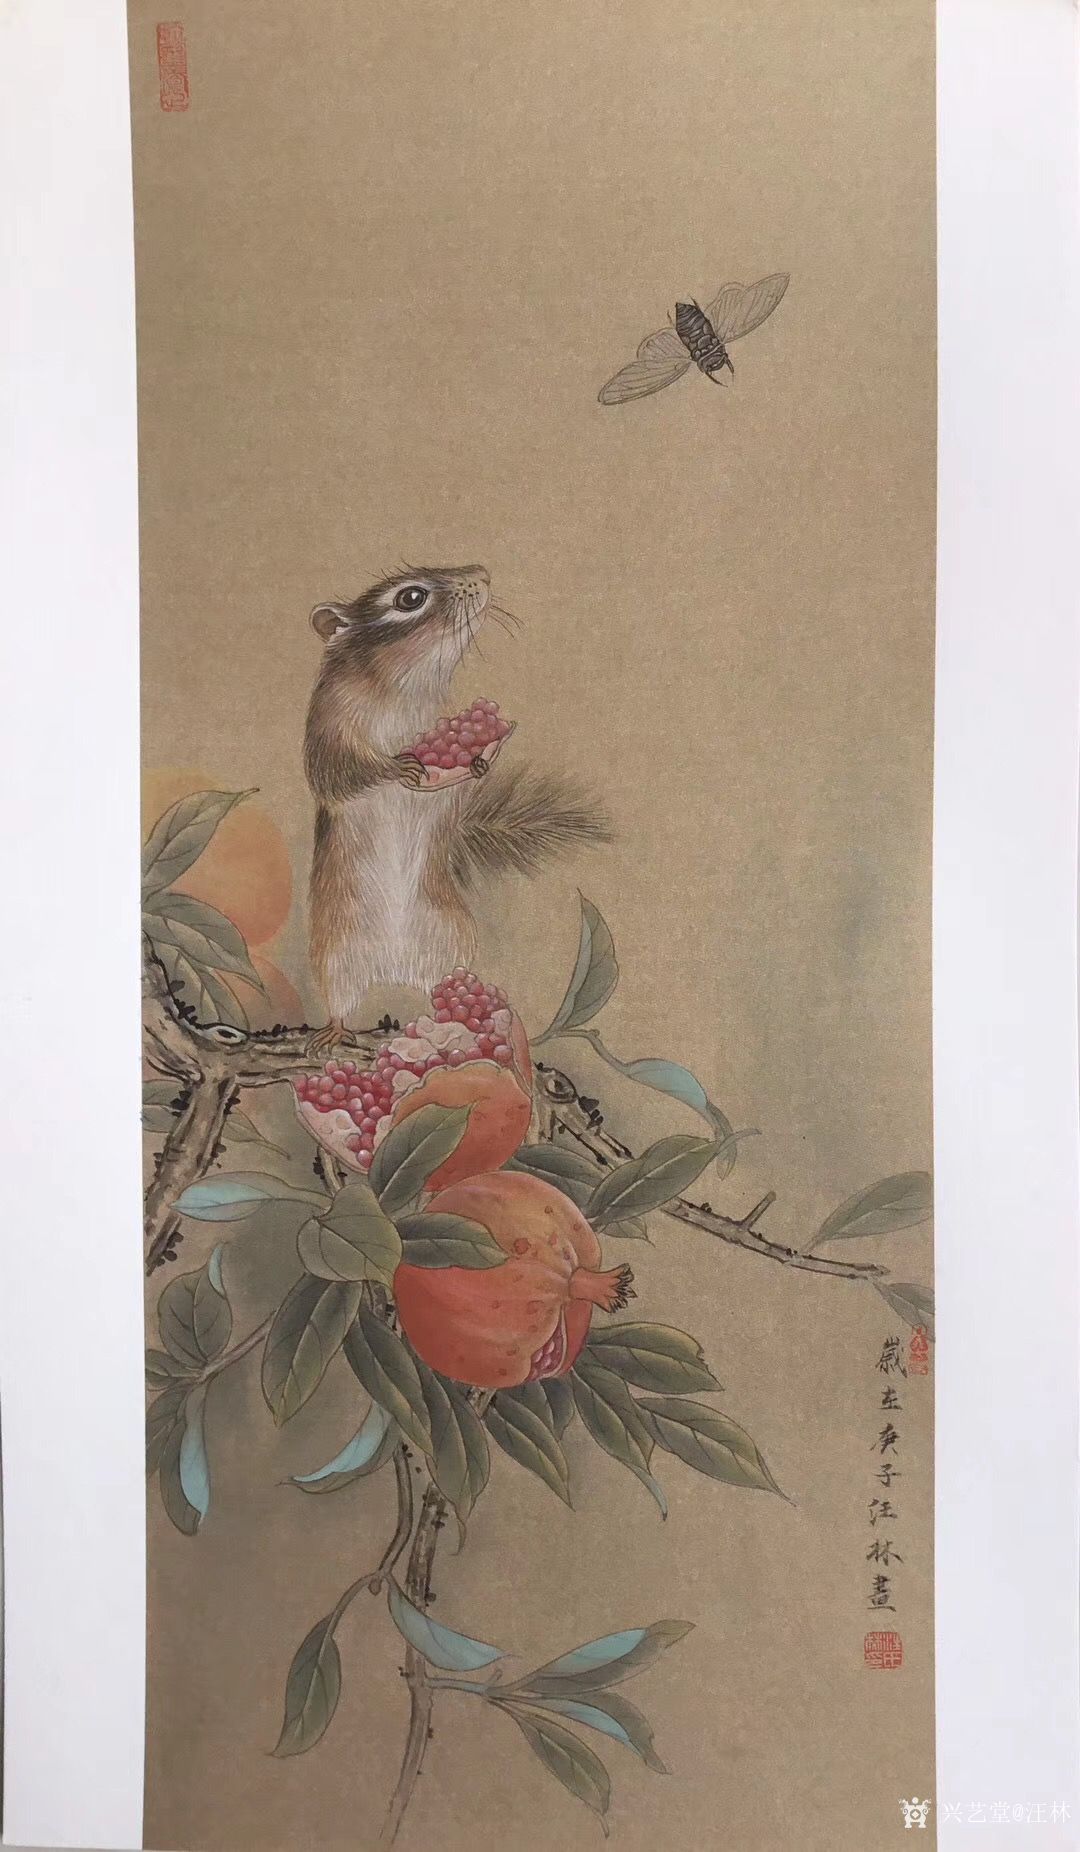 汪林日记-国画工笔画老鼠《多子多福图》尺寸65x38cm,老鼠多子,石榴也